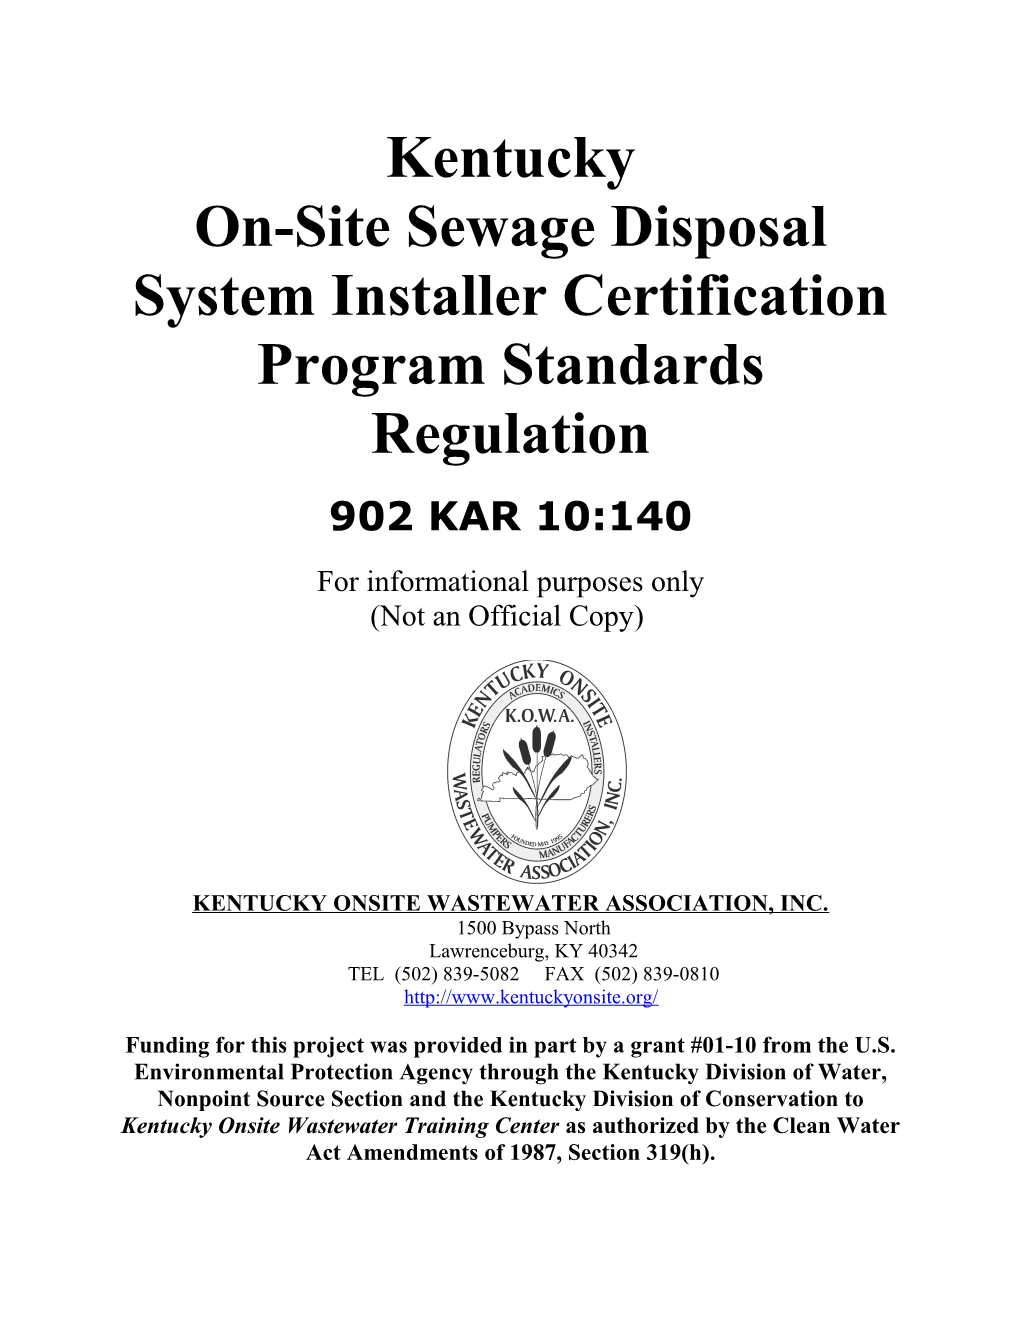 On-Site Sewage Disposal System Installer Certification Program Standards Regulation